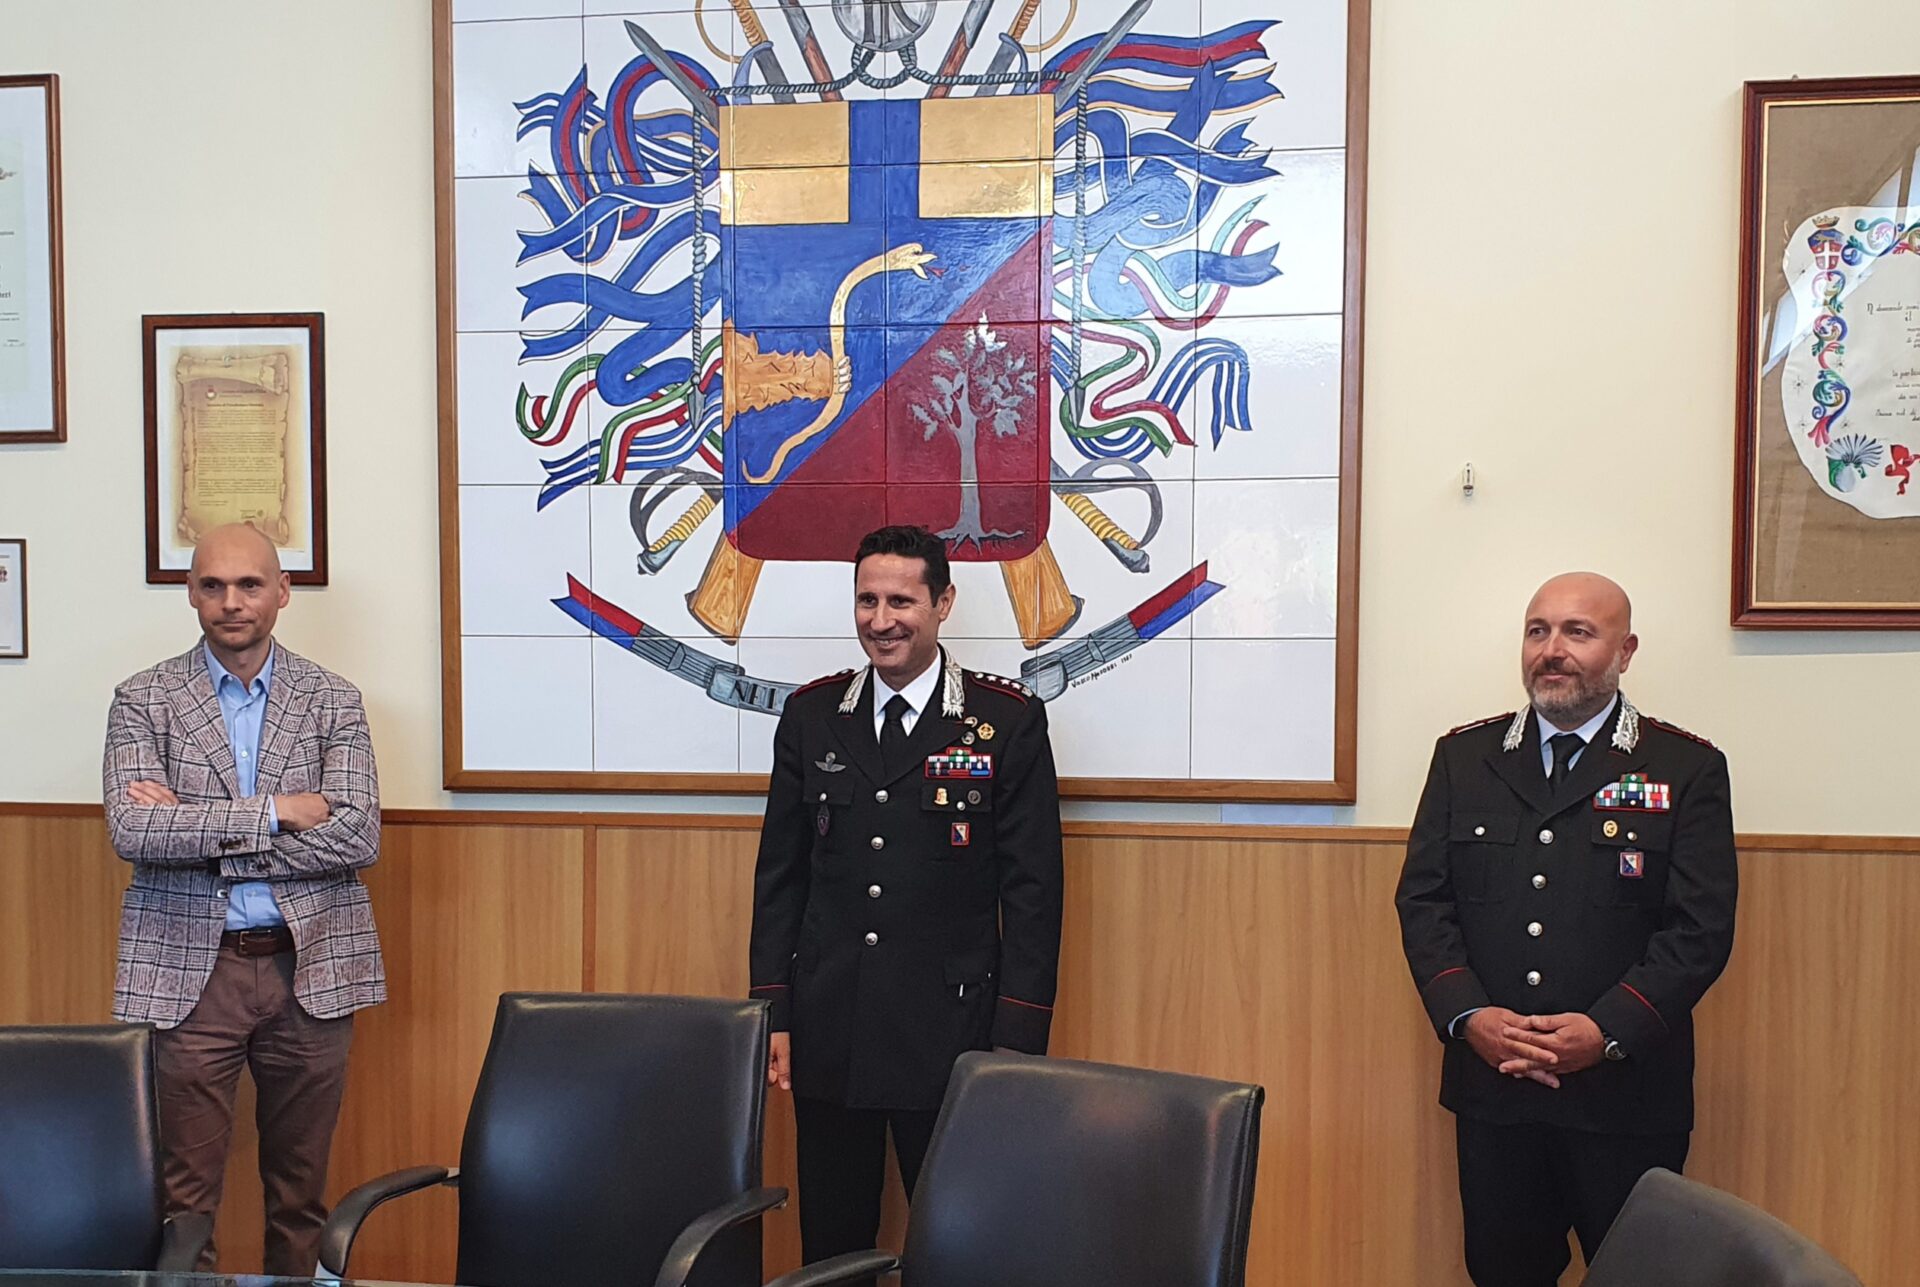 Cambio ai vertici. Siena, il Colonnello Ferrucci è il nuovo Comandante provinciale dei Carabinieri